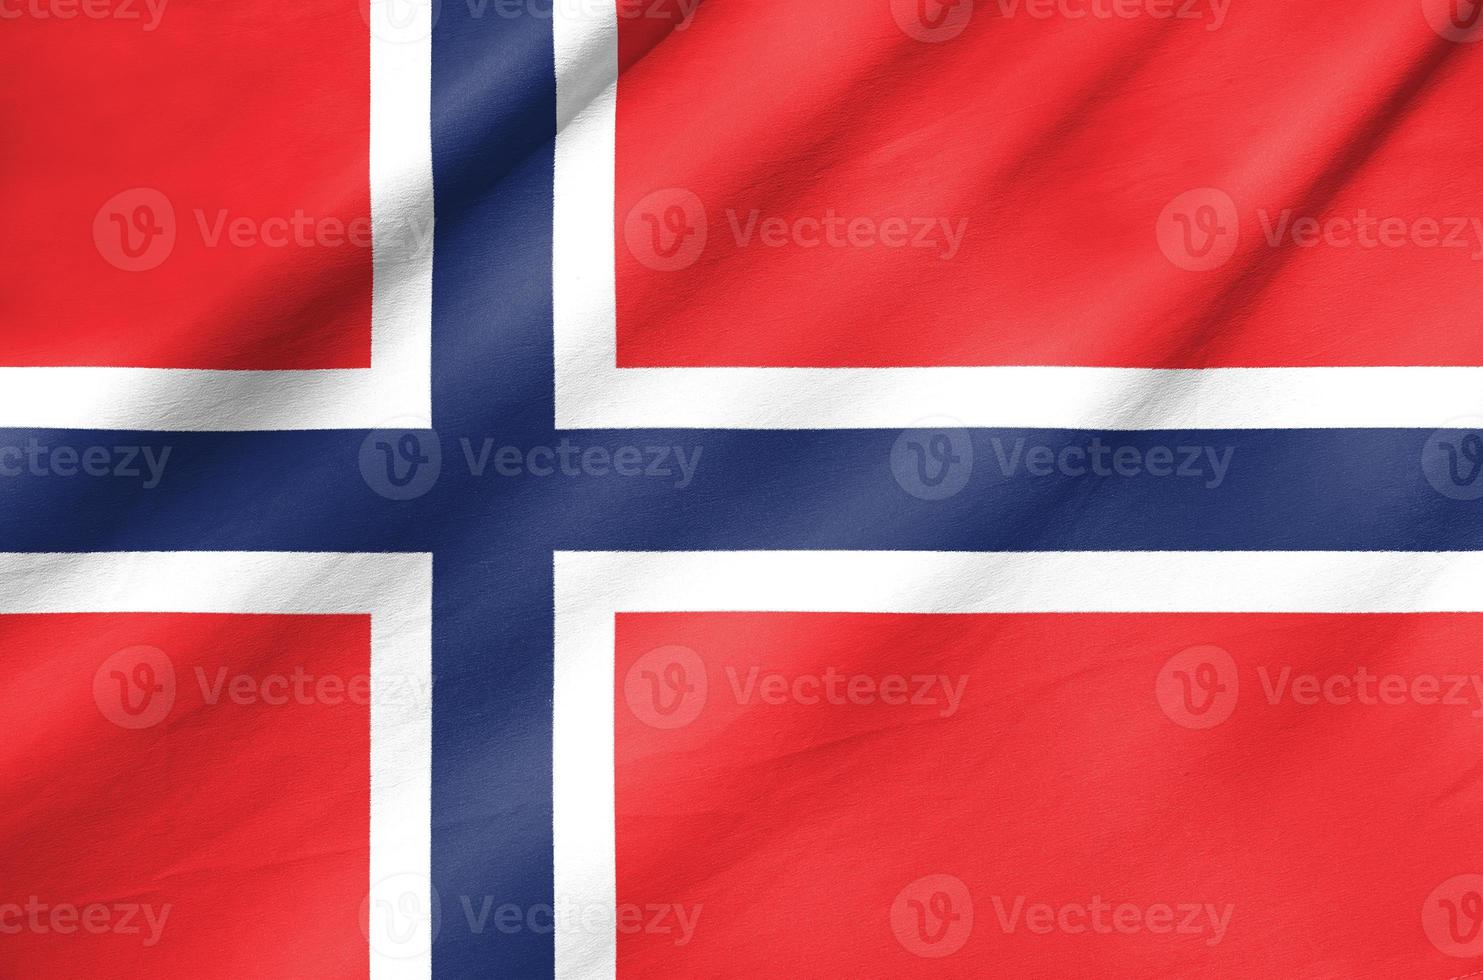 bandiera in tessuto della norvegia foto